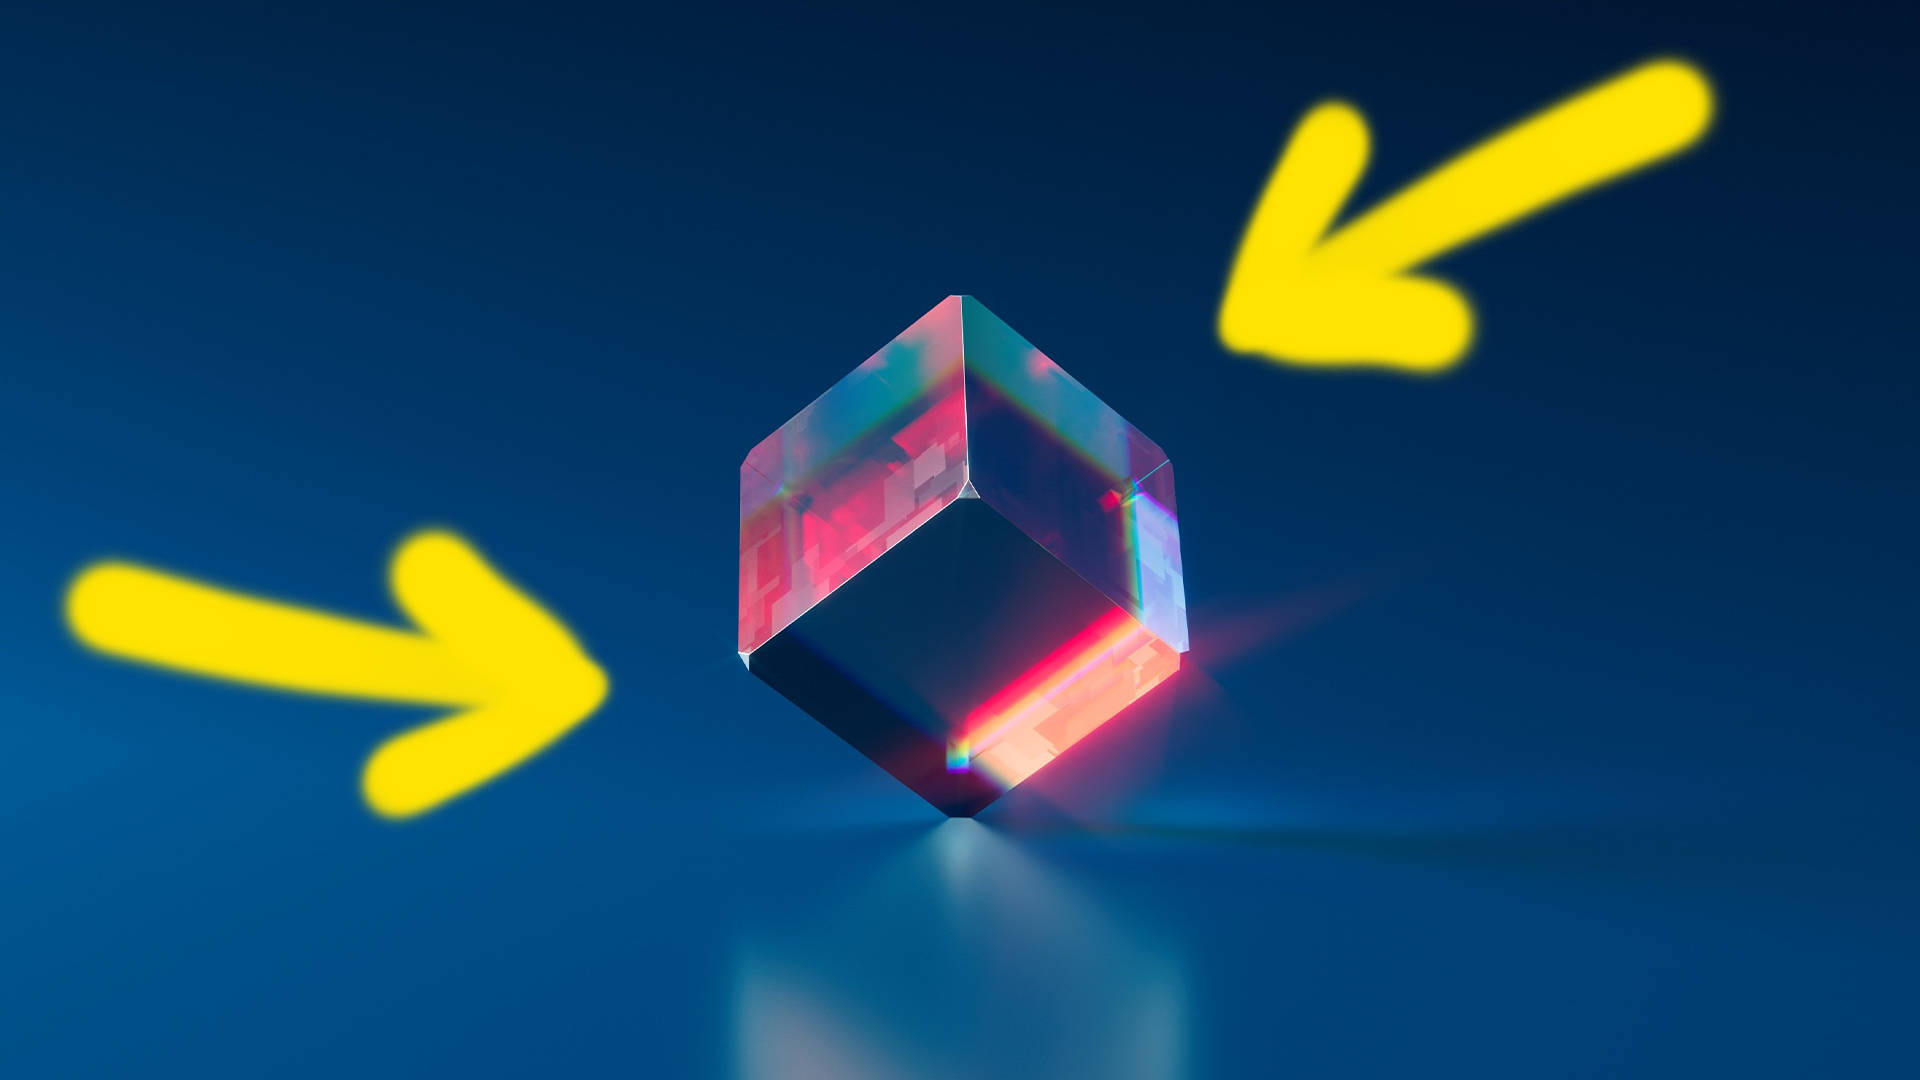 A cube and an arrow